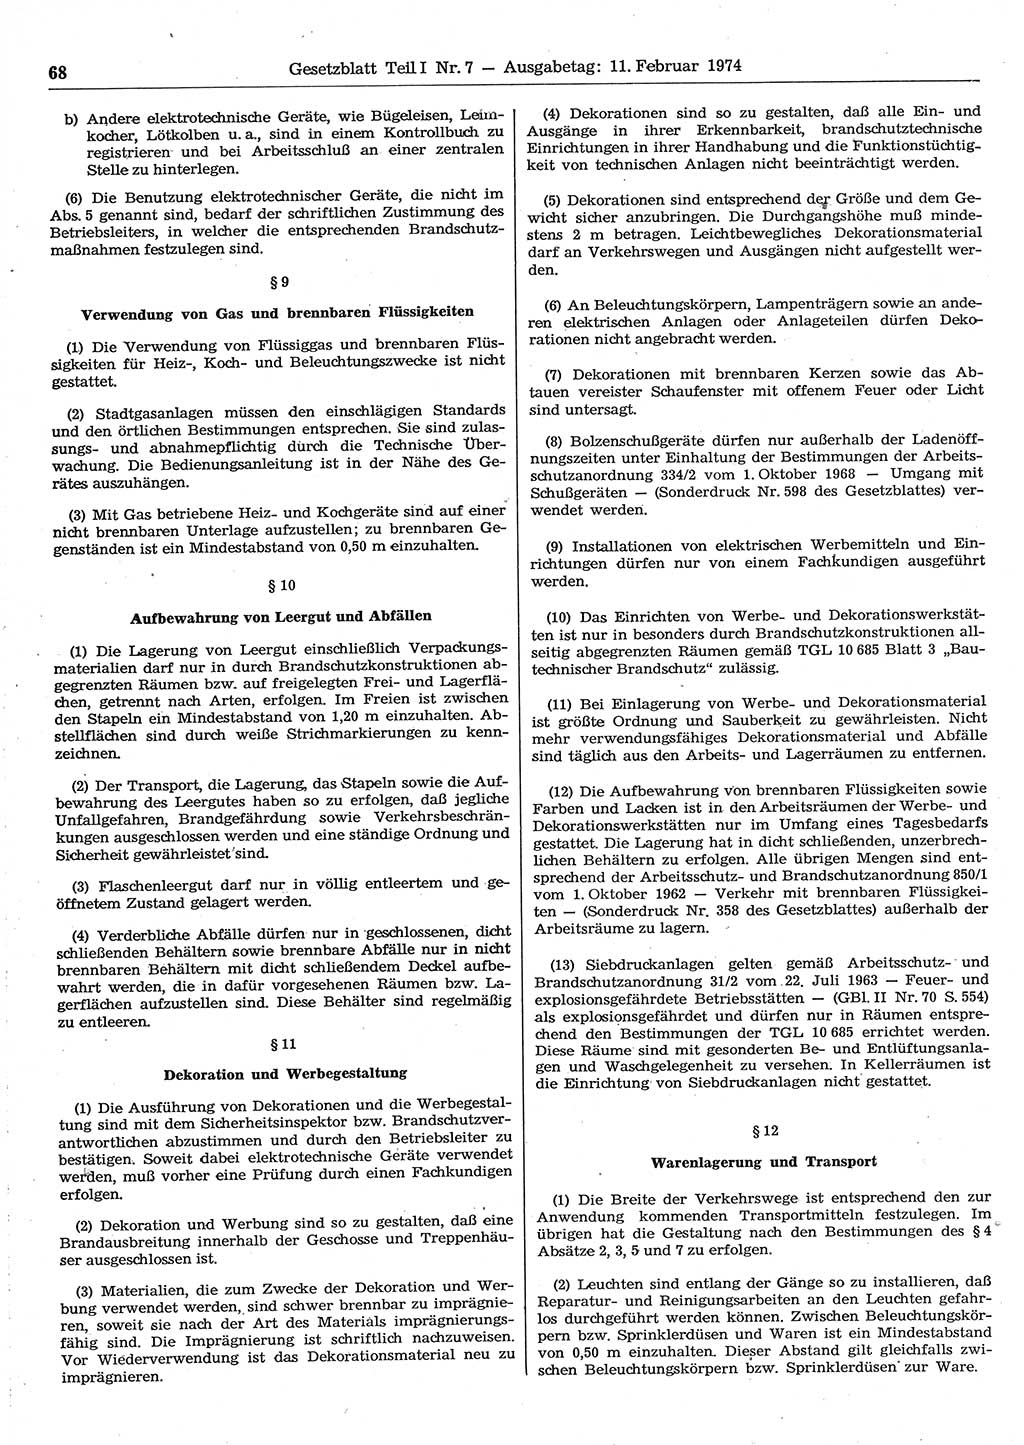 Gesetzblatt (GBl.) der Deutschen Demokratischen Republik (DDR) Teil Ⅰ 1974, Seite 68 (GBl. DDR Ⅰ 1974, S. 68)